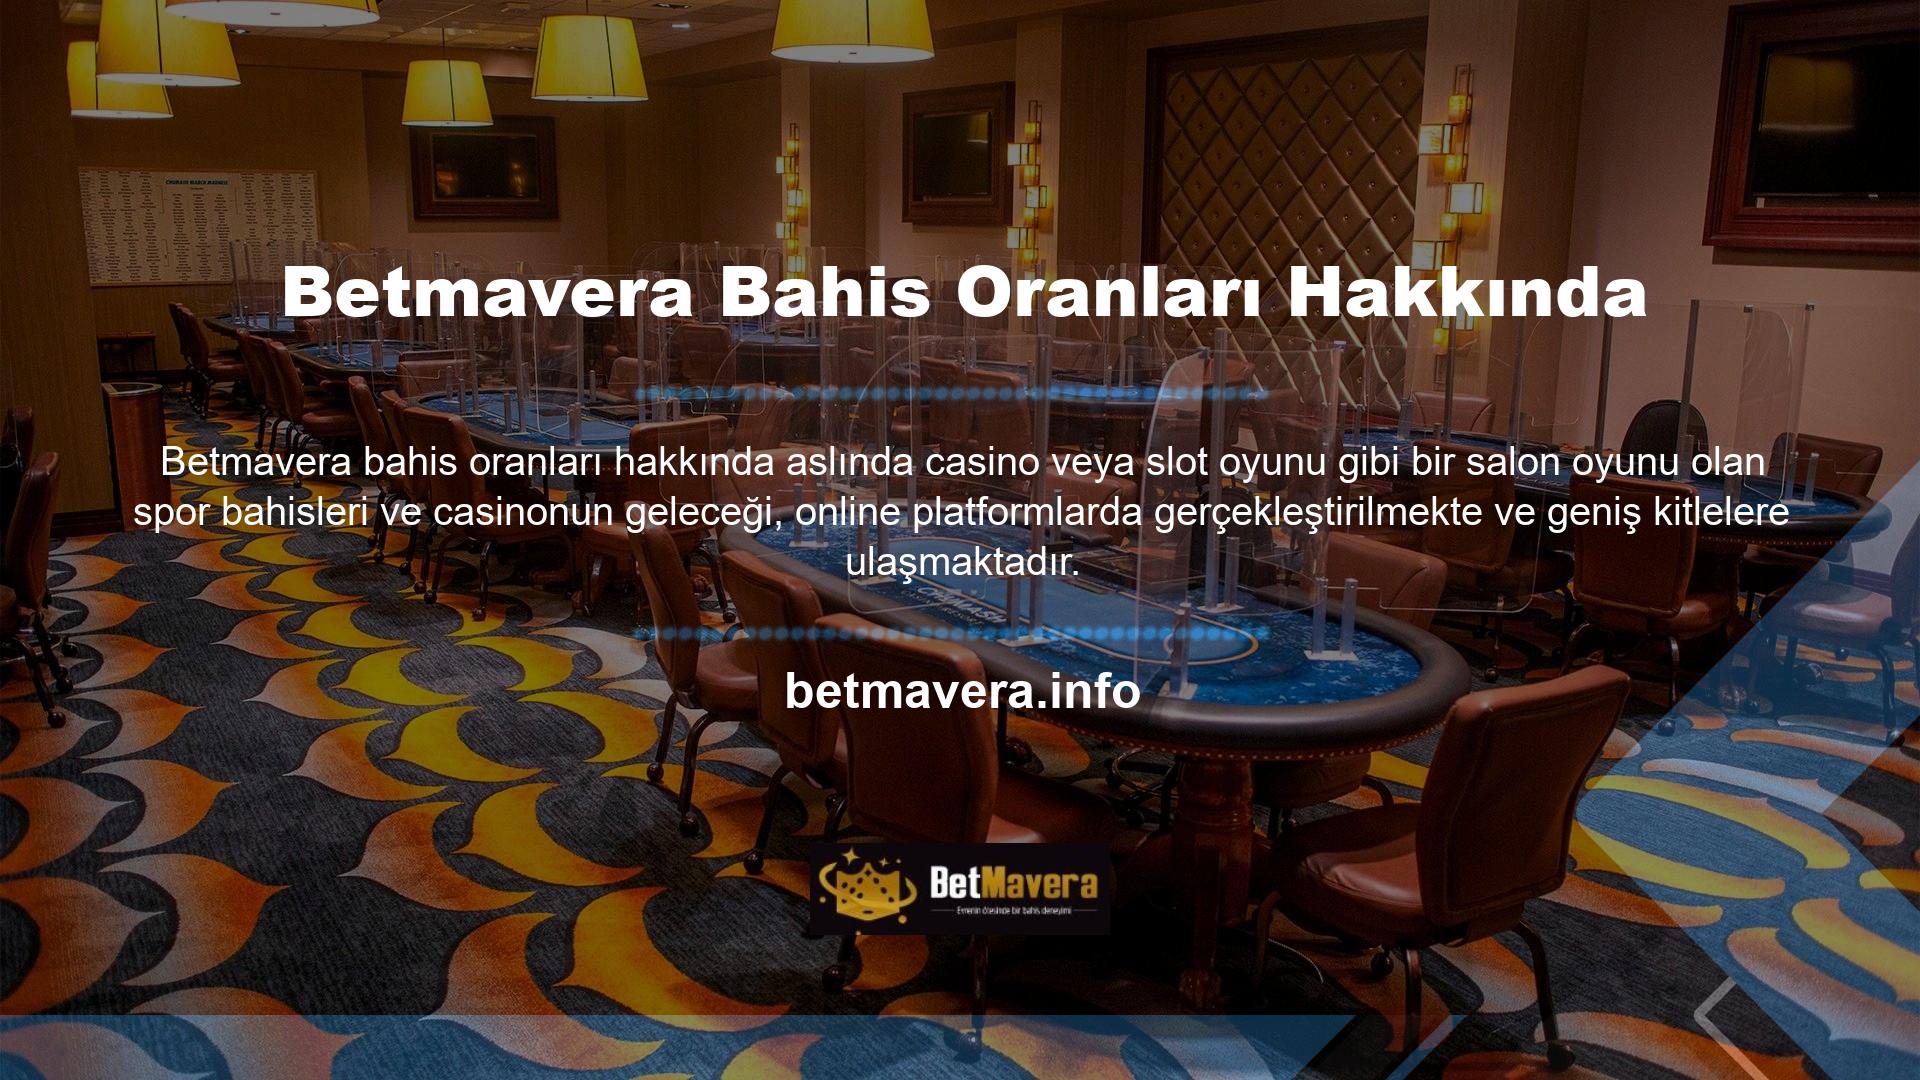 HD video kalitesine sahip popüler casino ve slot oyunları ile adından söz ettiren Betmavera, sektörün lokomotifi olan spor bahisleri konusunda da oldukça aktiftir